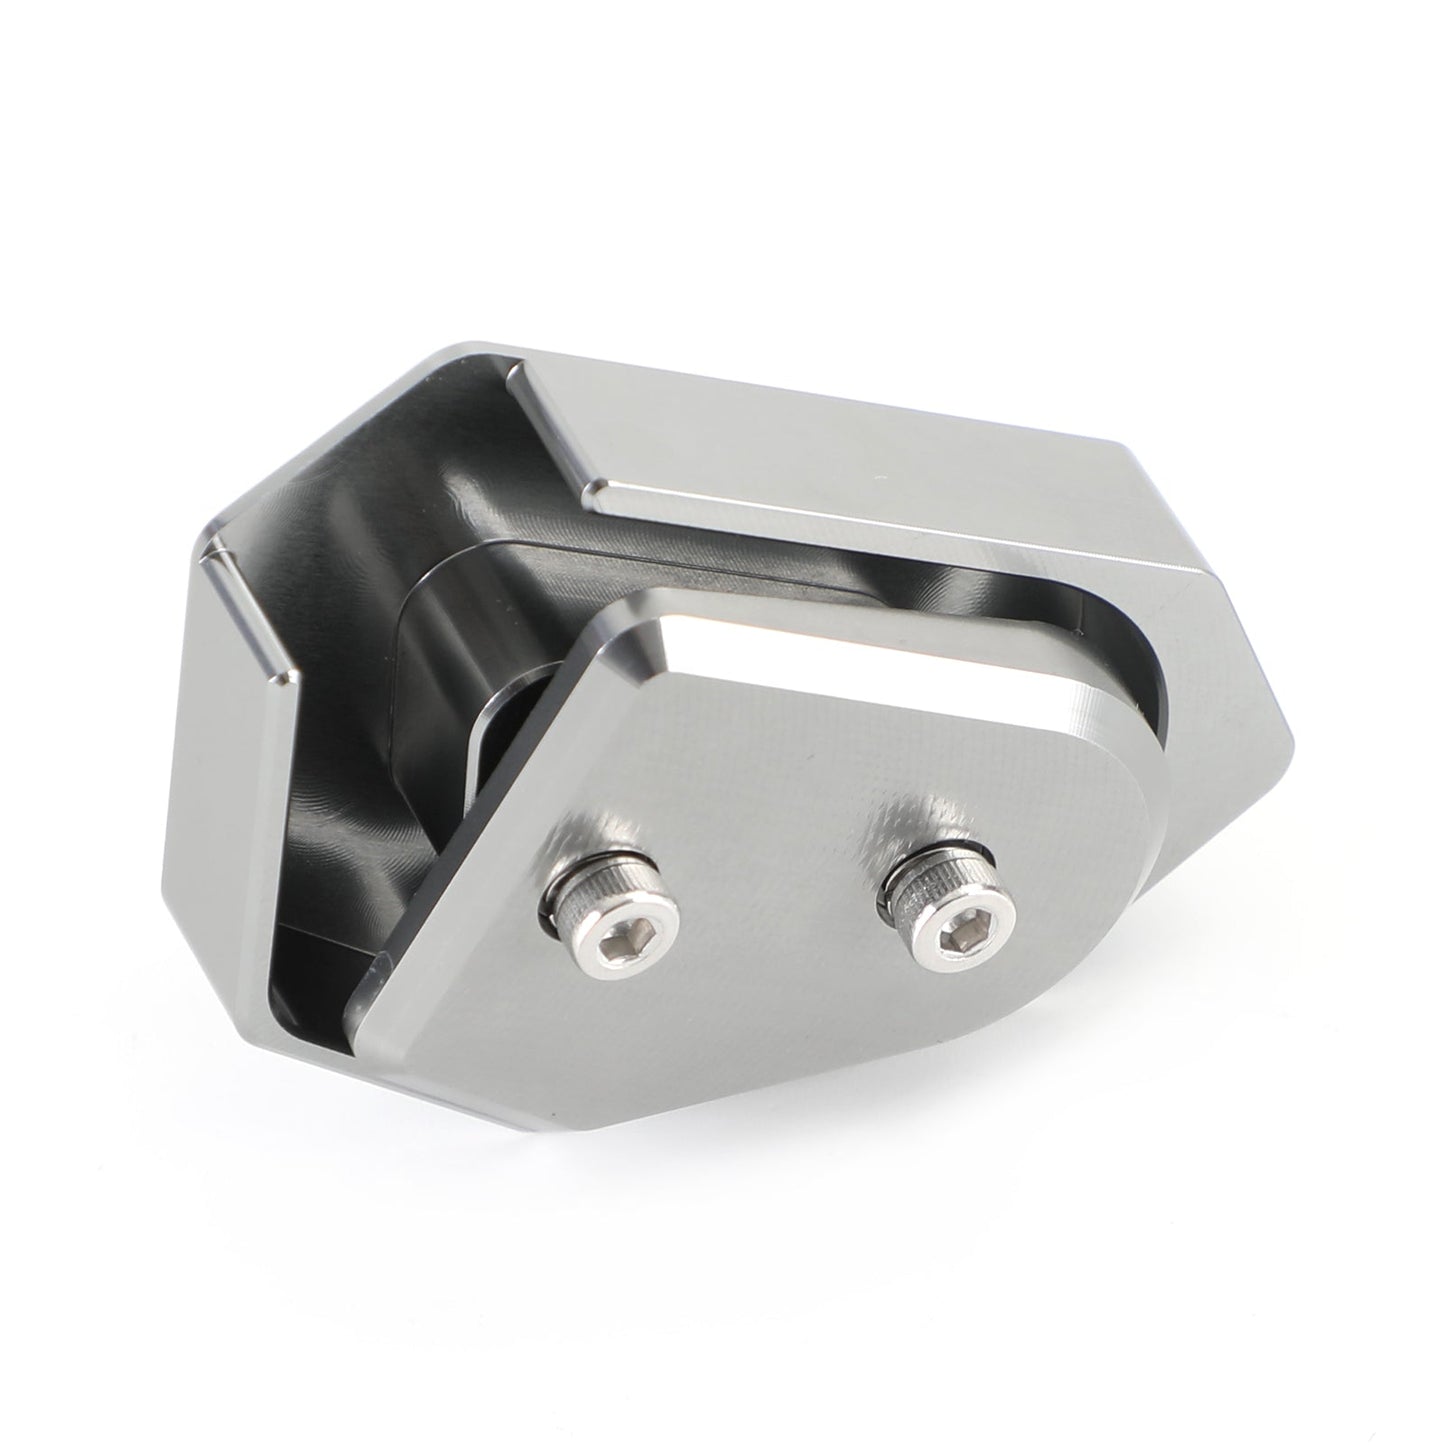 Hinterradbremsen-Vergrößerungshebel Pedalverlängerung Aluminium für Bmw G310 Gs R 21 Titan Generic